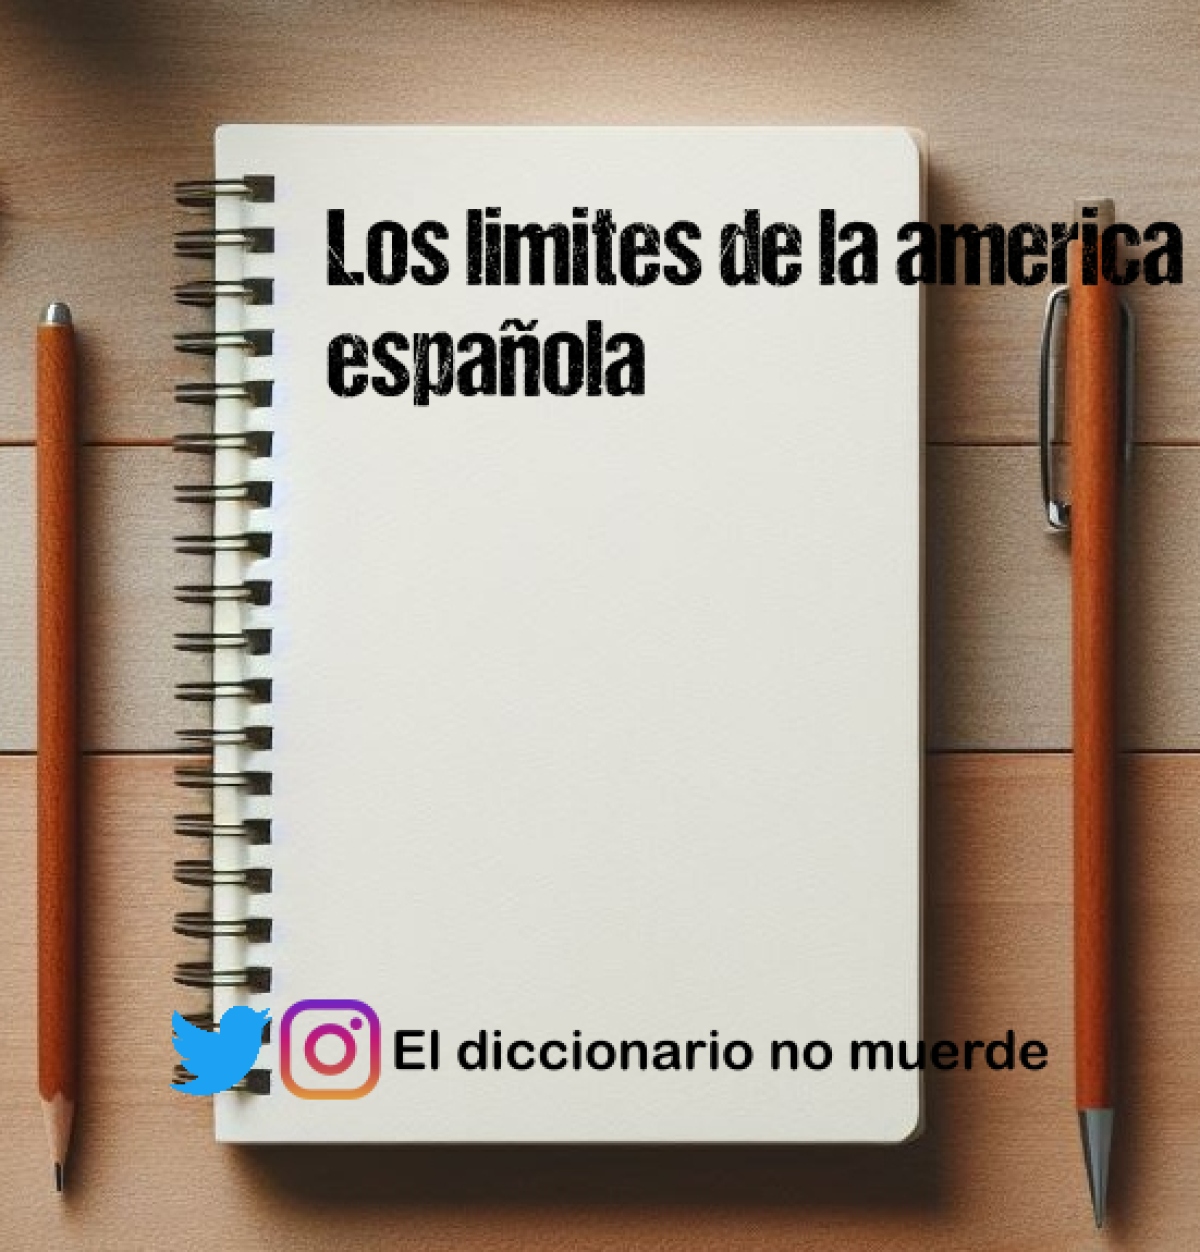 Los limites de la america española